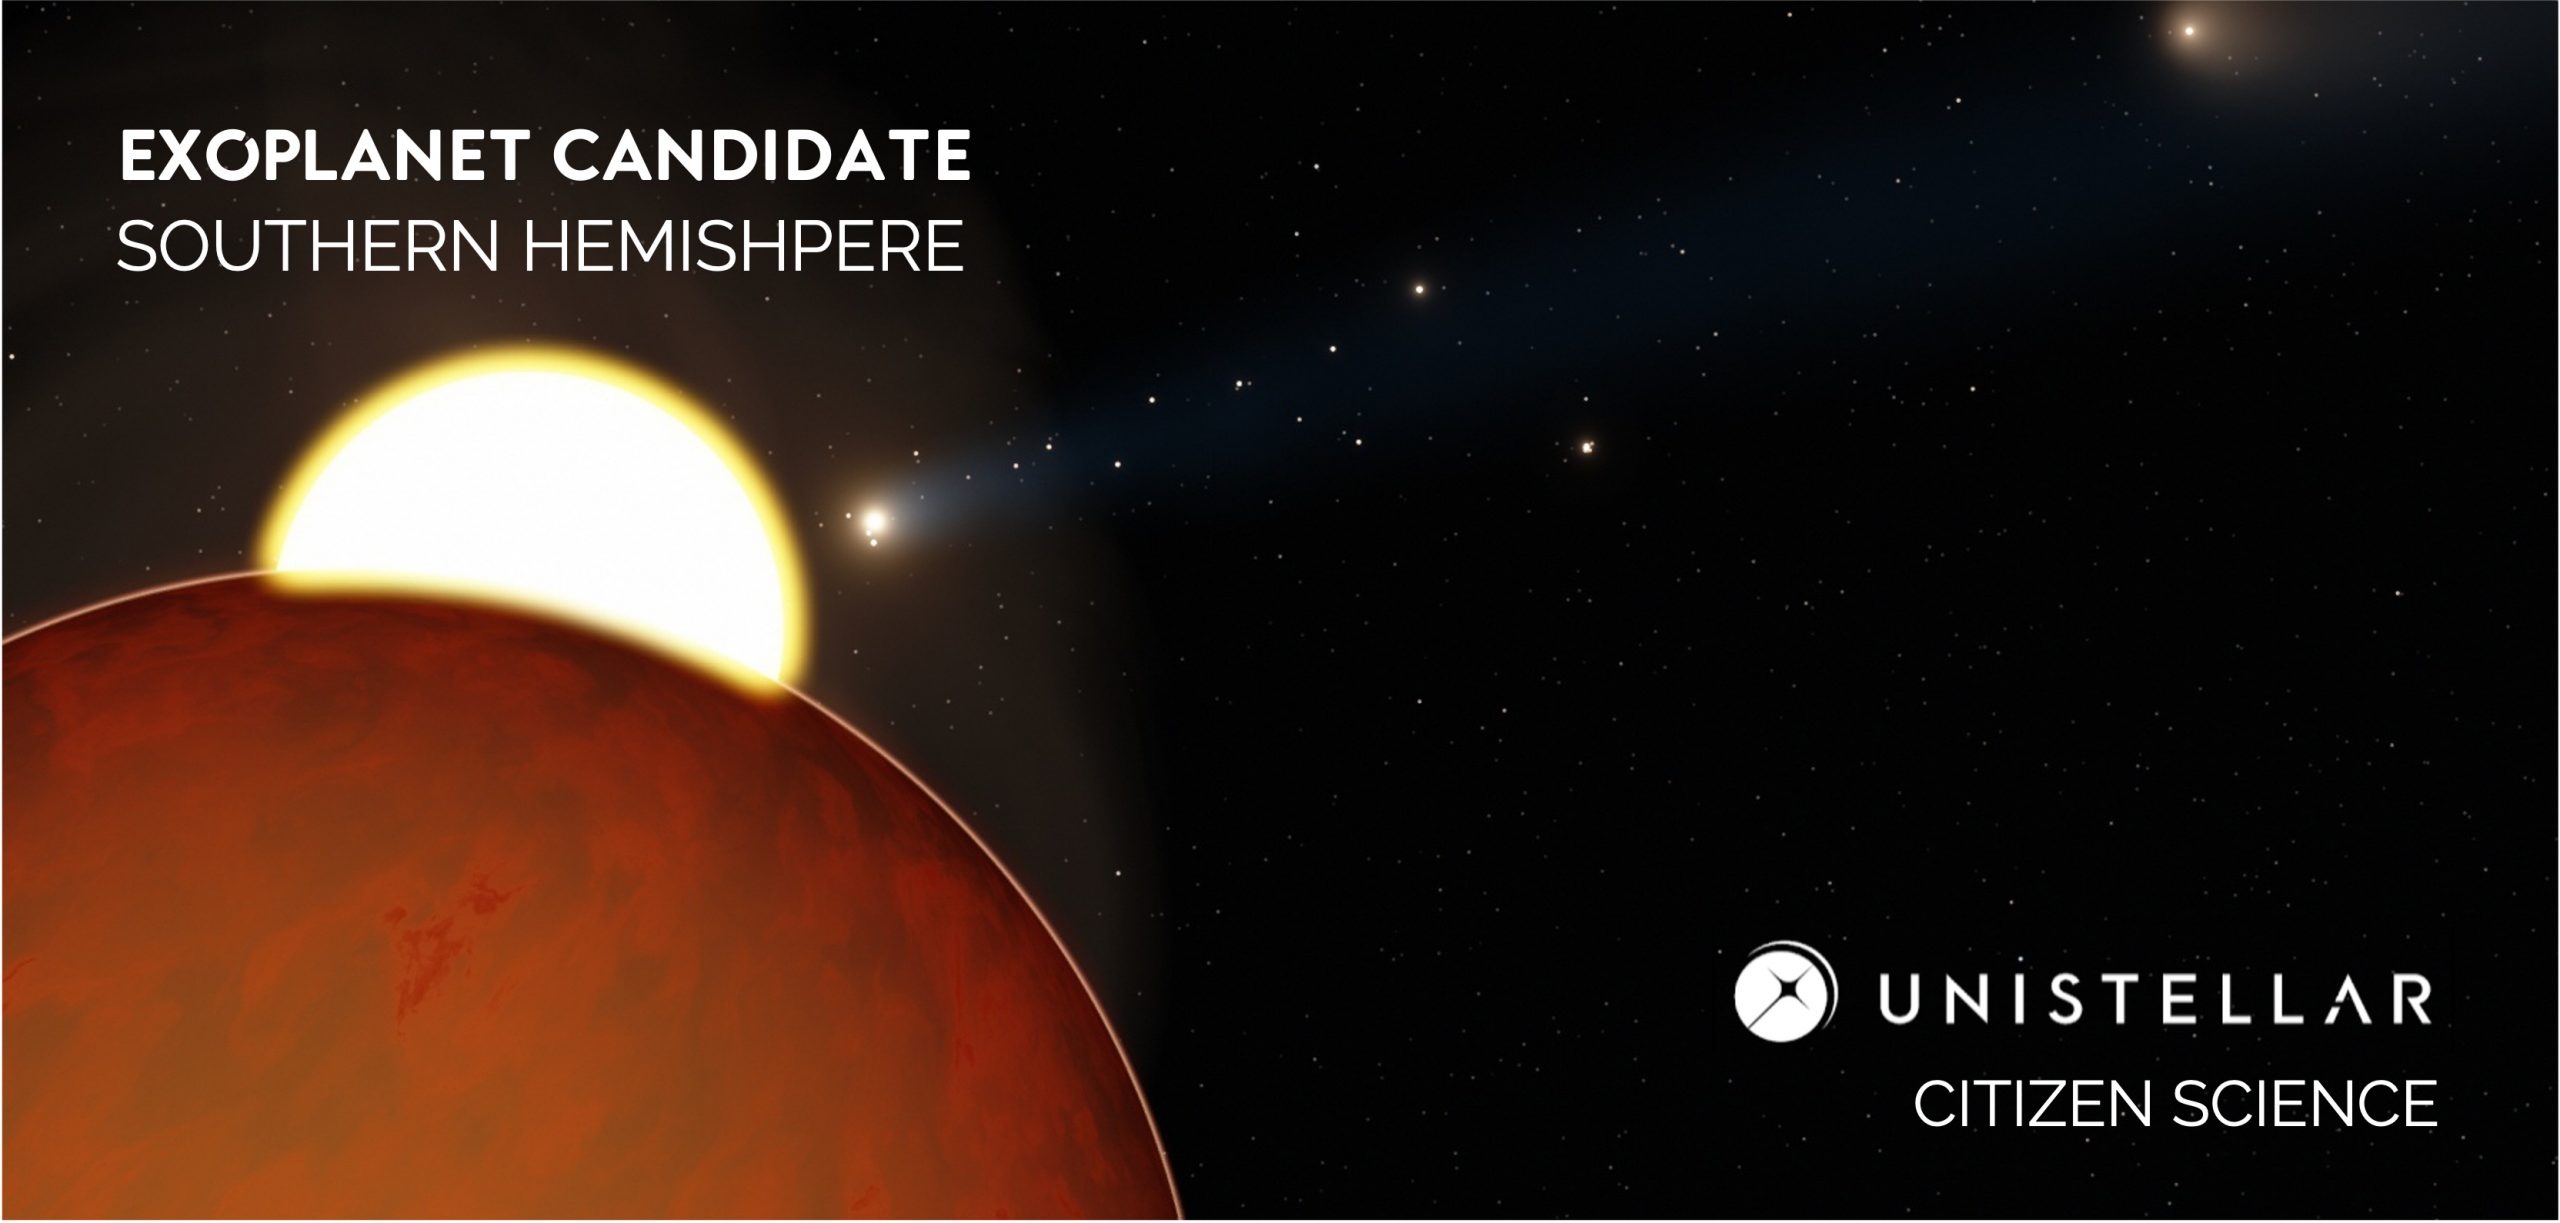 Exoplanet Candidate illustration - Unistellar